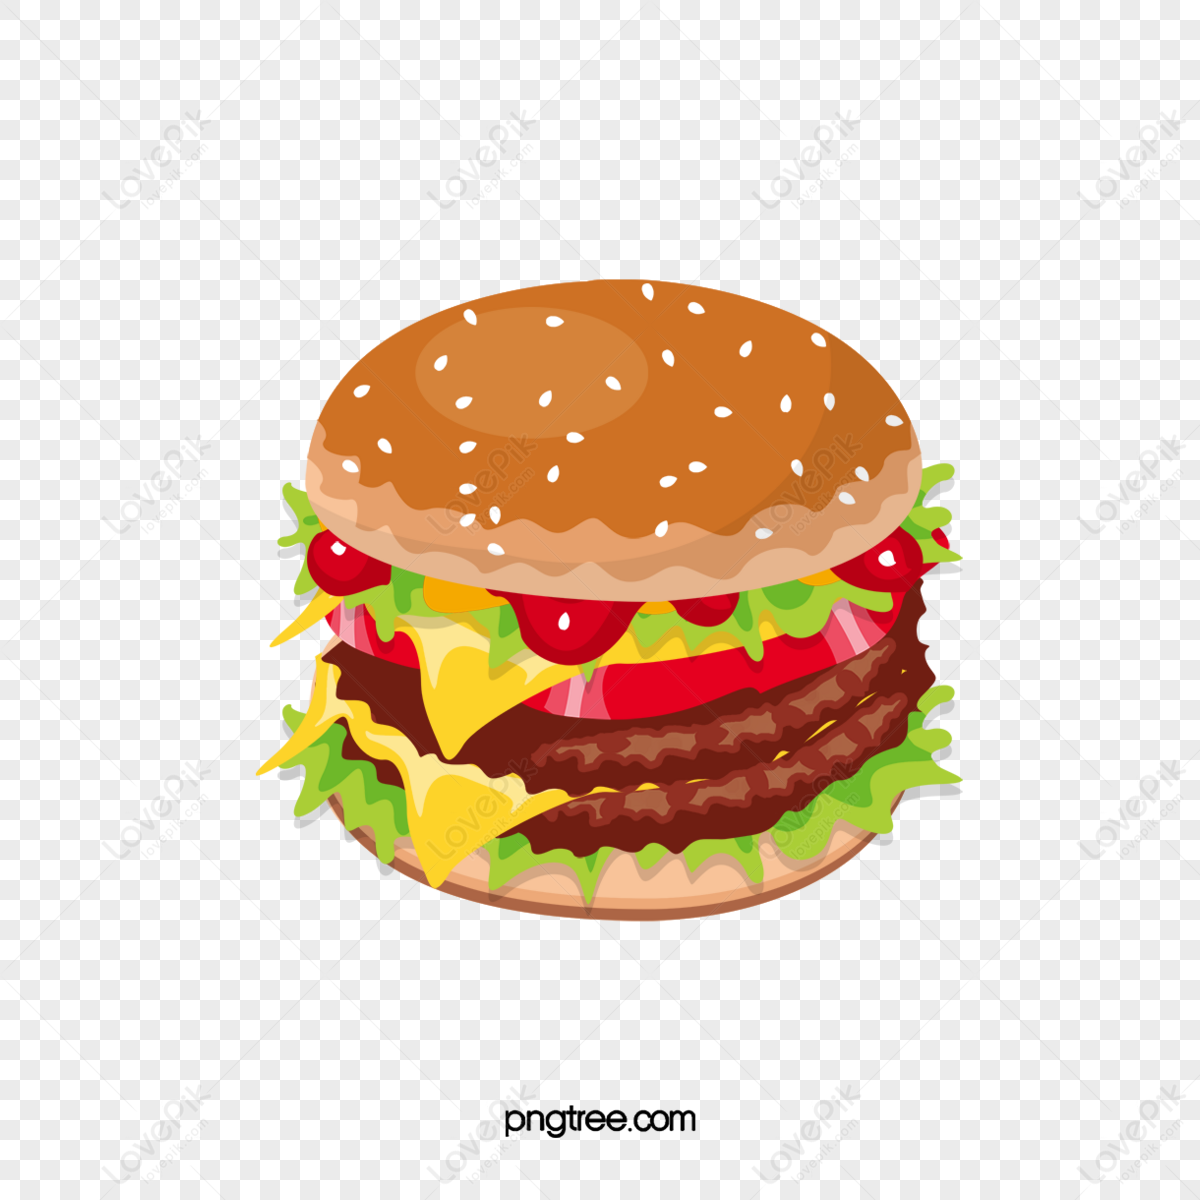 Sticker Hamburger is exploding. Vector illustration 